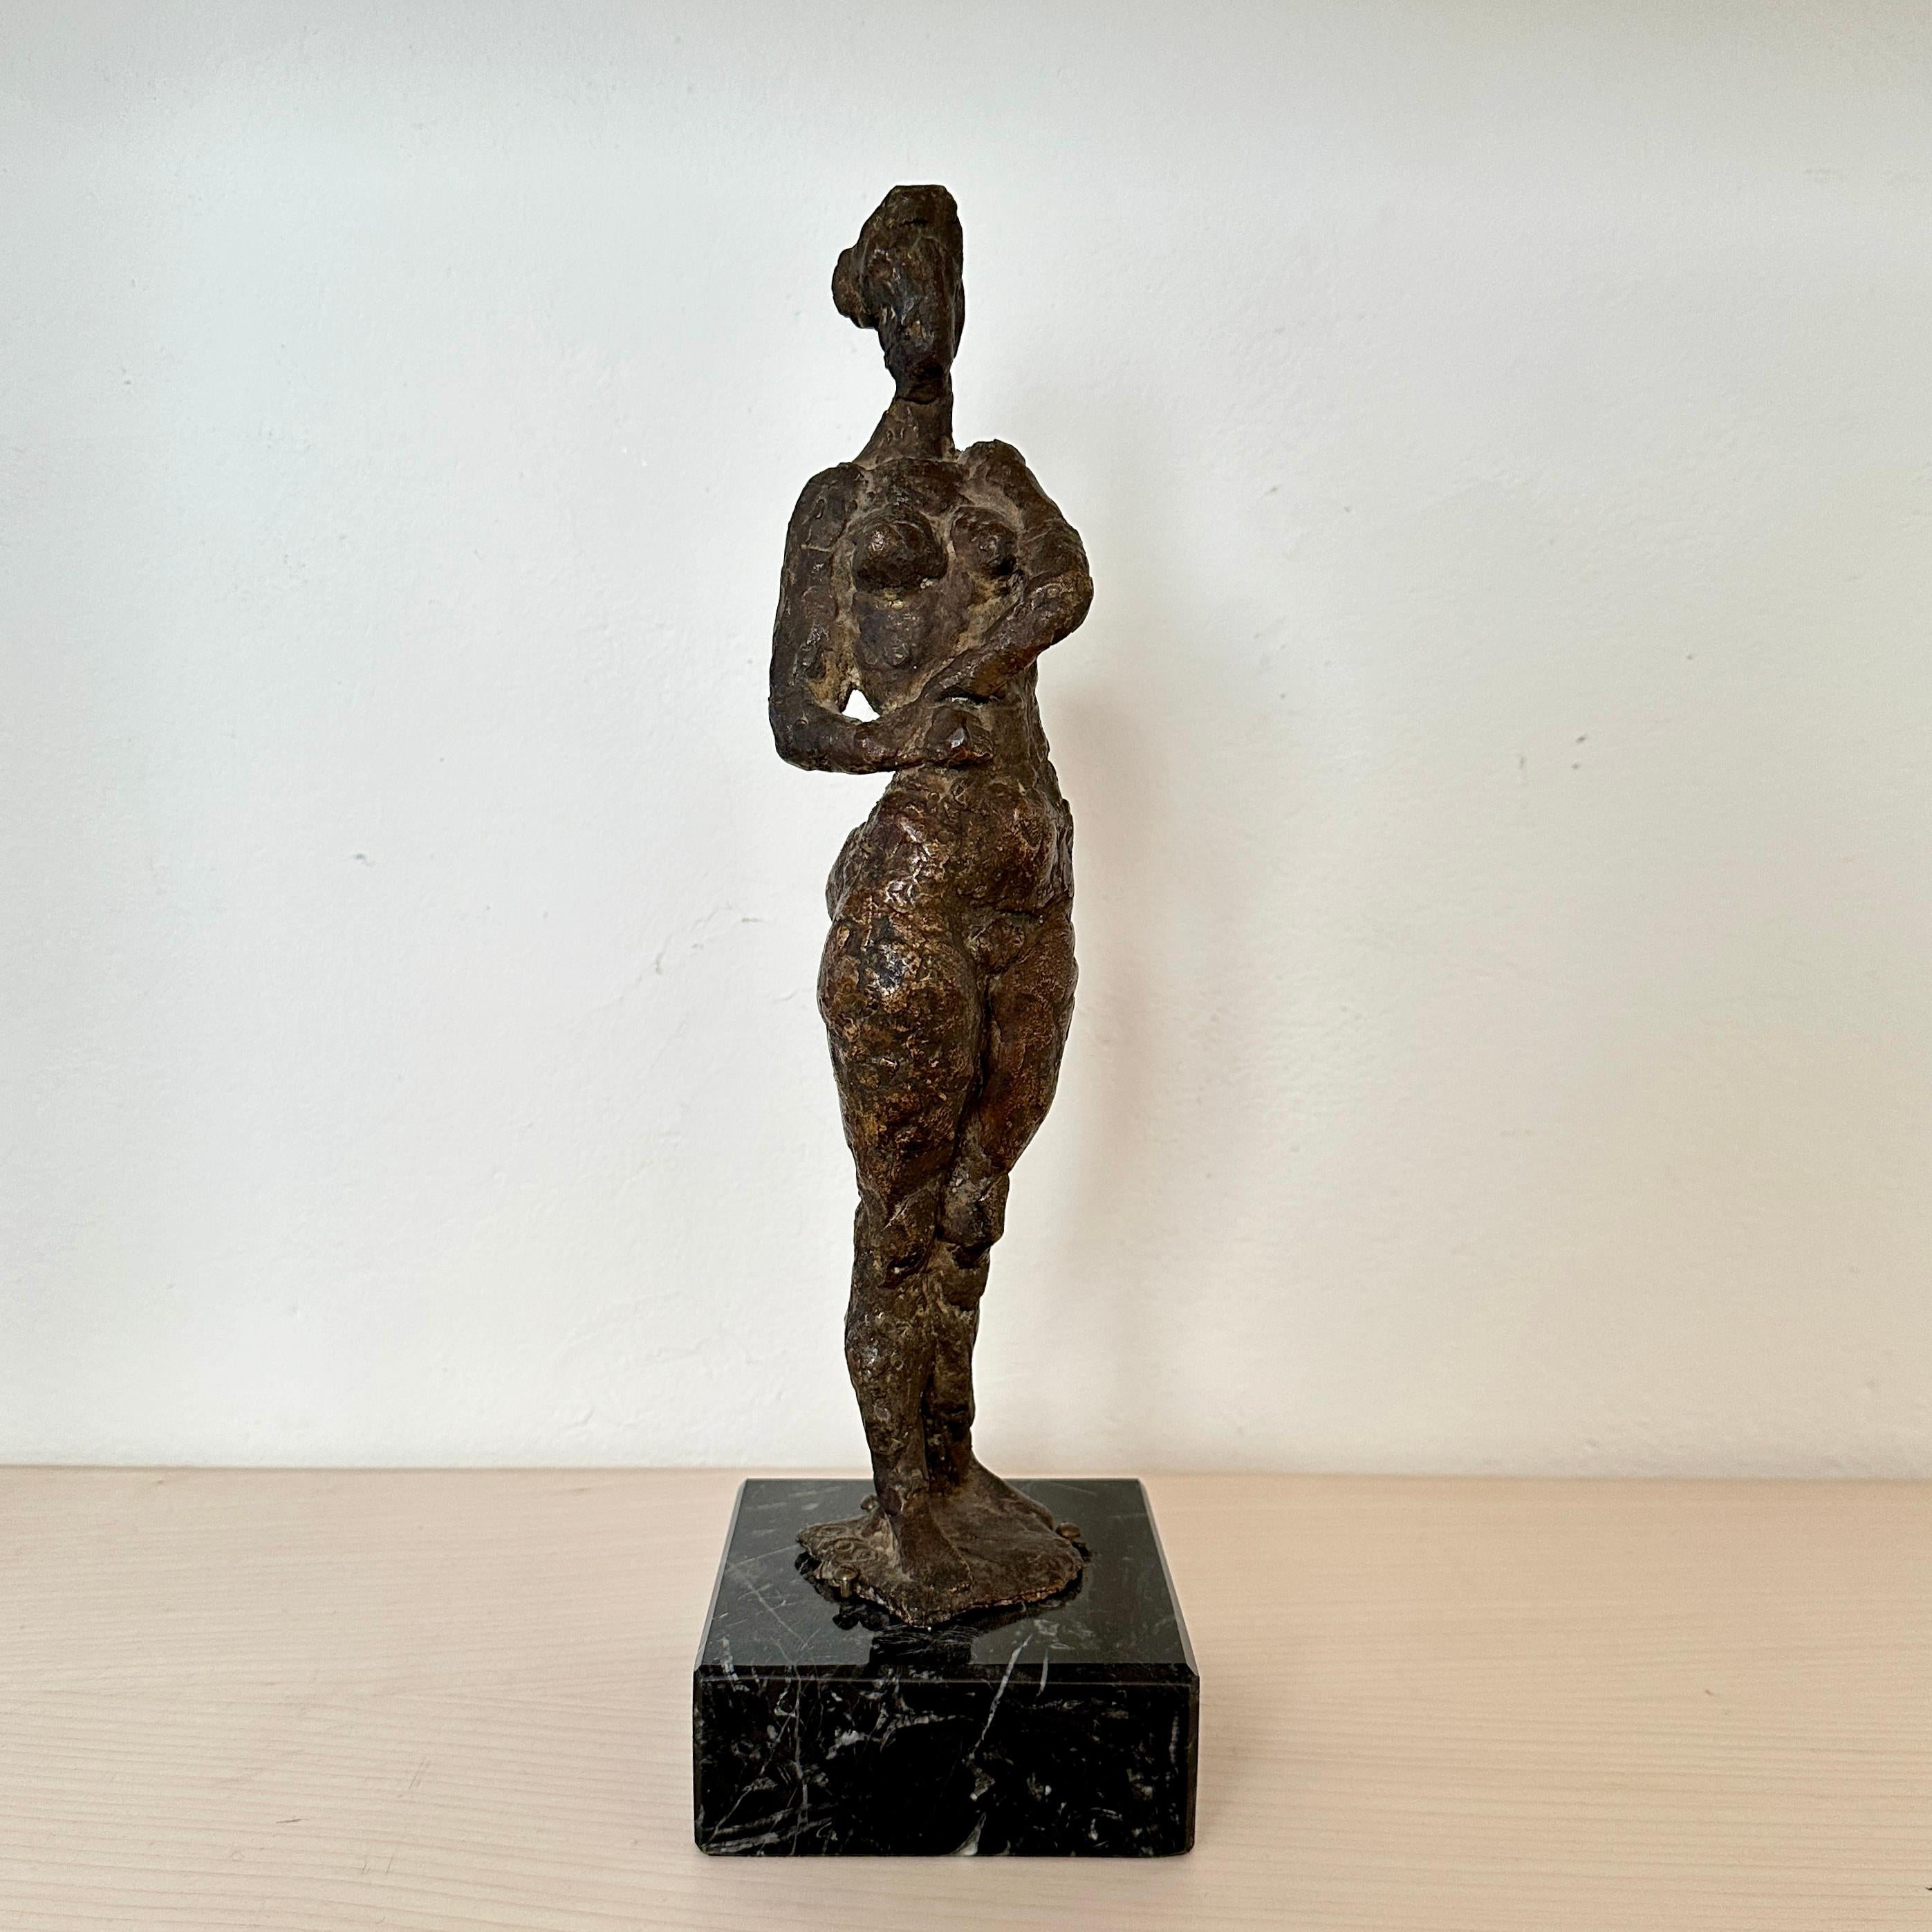 Créée en 1969 par le célèbre artiste Oskar Bottoli, cette petite sculpture en bronze moulé capture l'allure intemporelle de la forme féminine. 
Représentant une femme nue debout, l'œuvre dégage un équilibre délicat entre la grâce et la force.